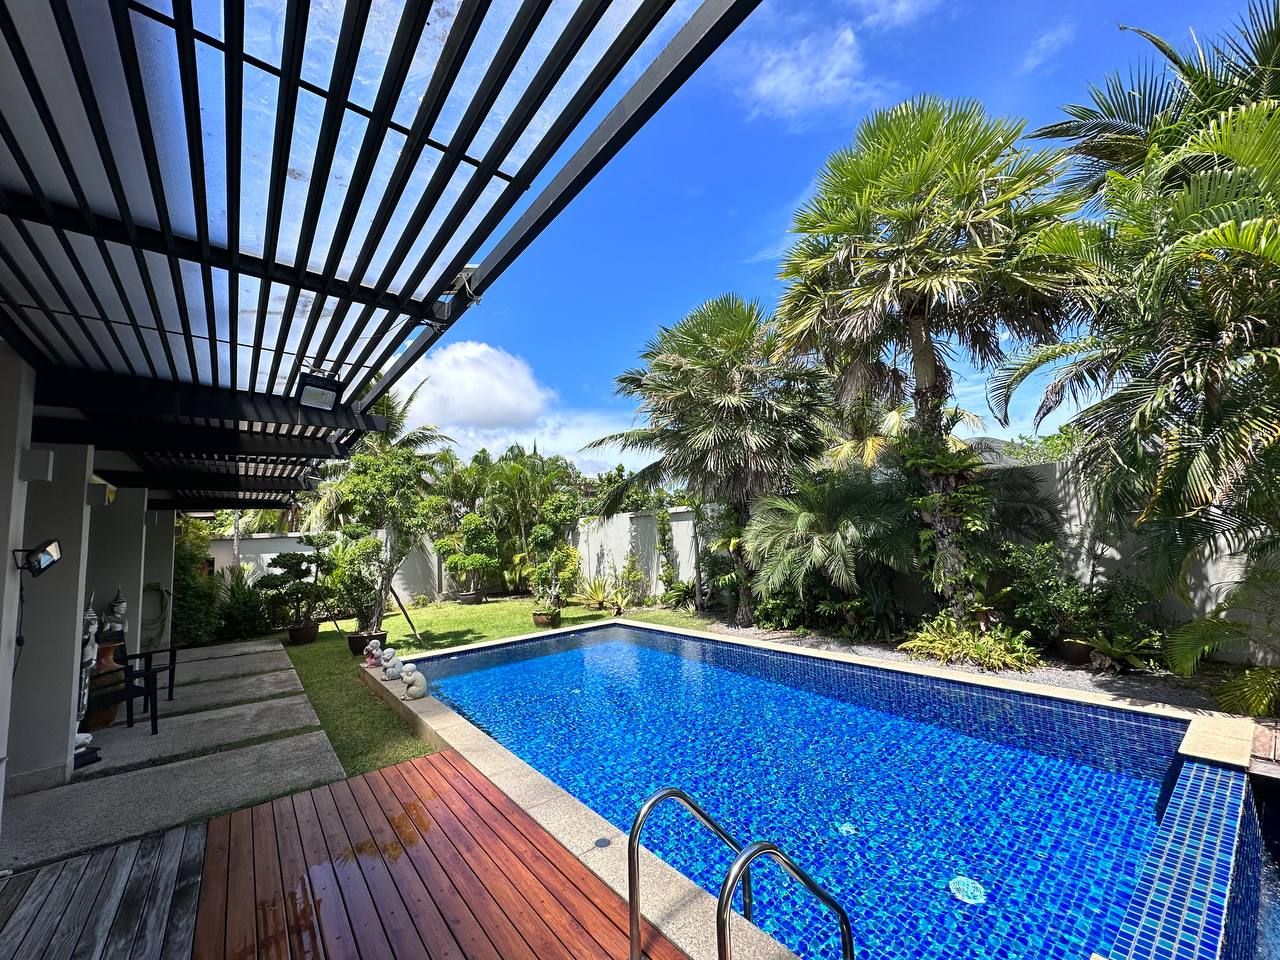 Villa in Insel Phuket, Thailand, 239 m2 - Foto 1